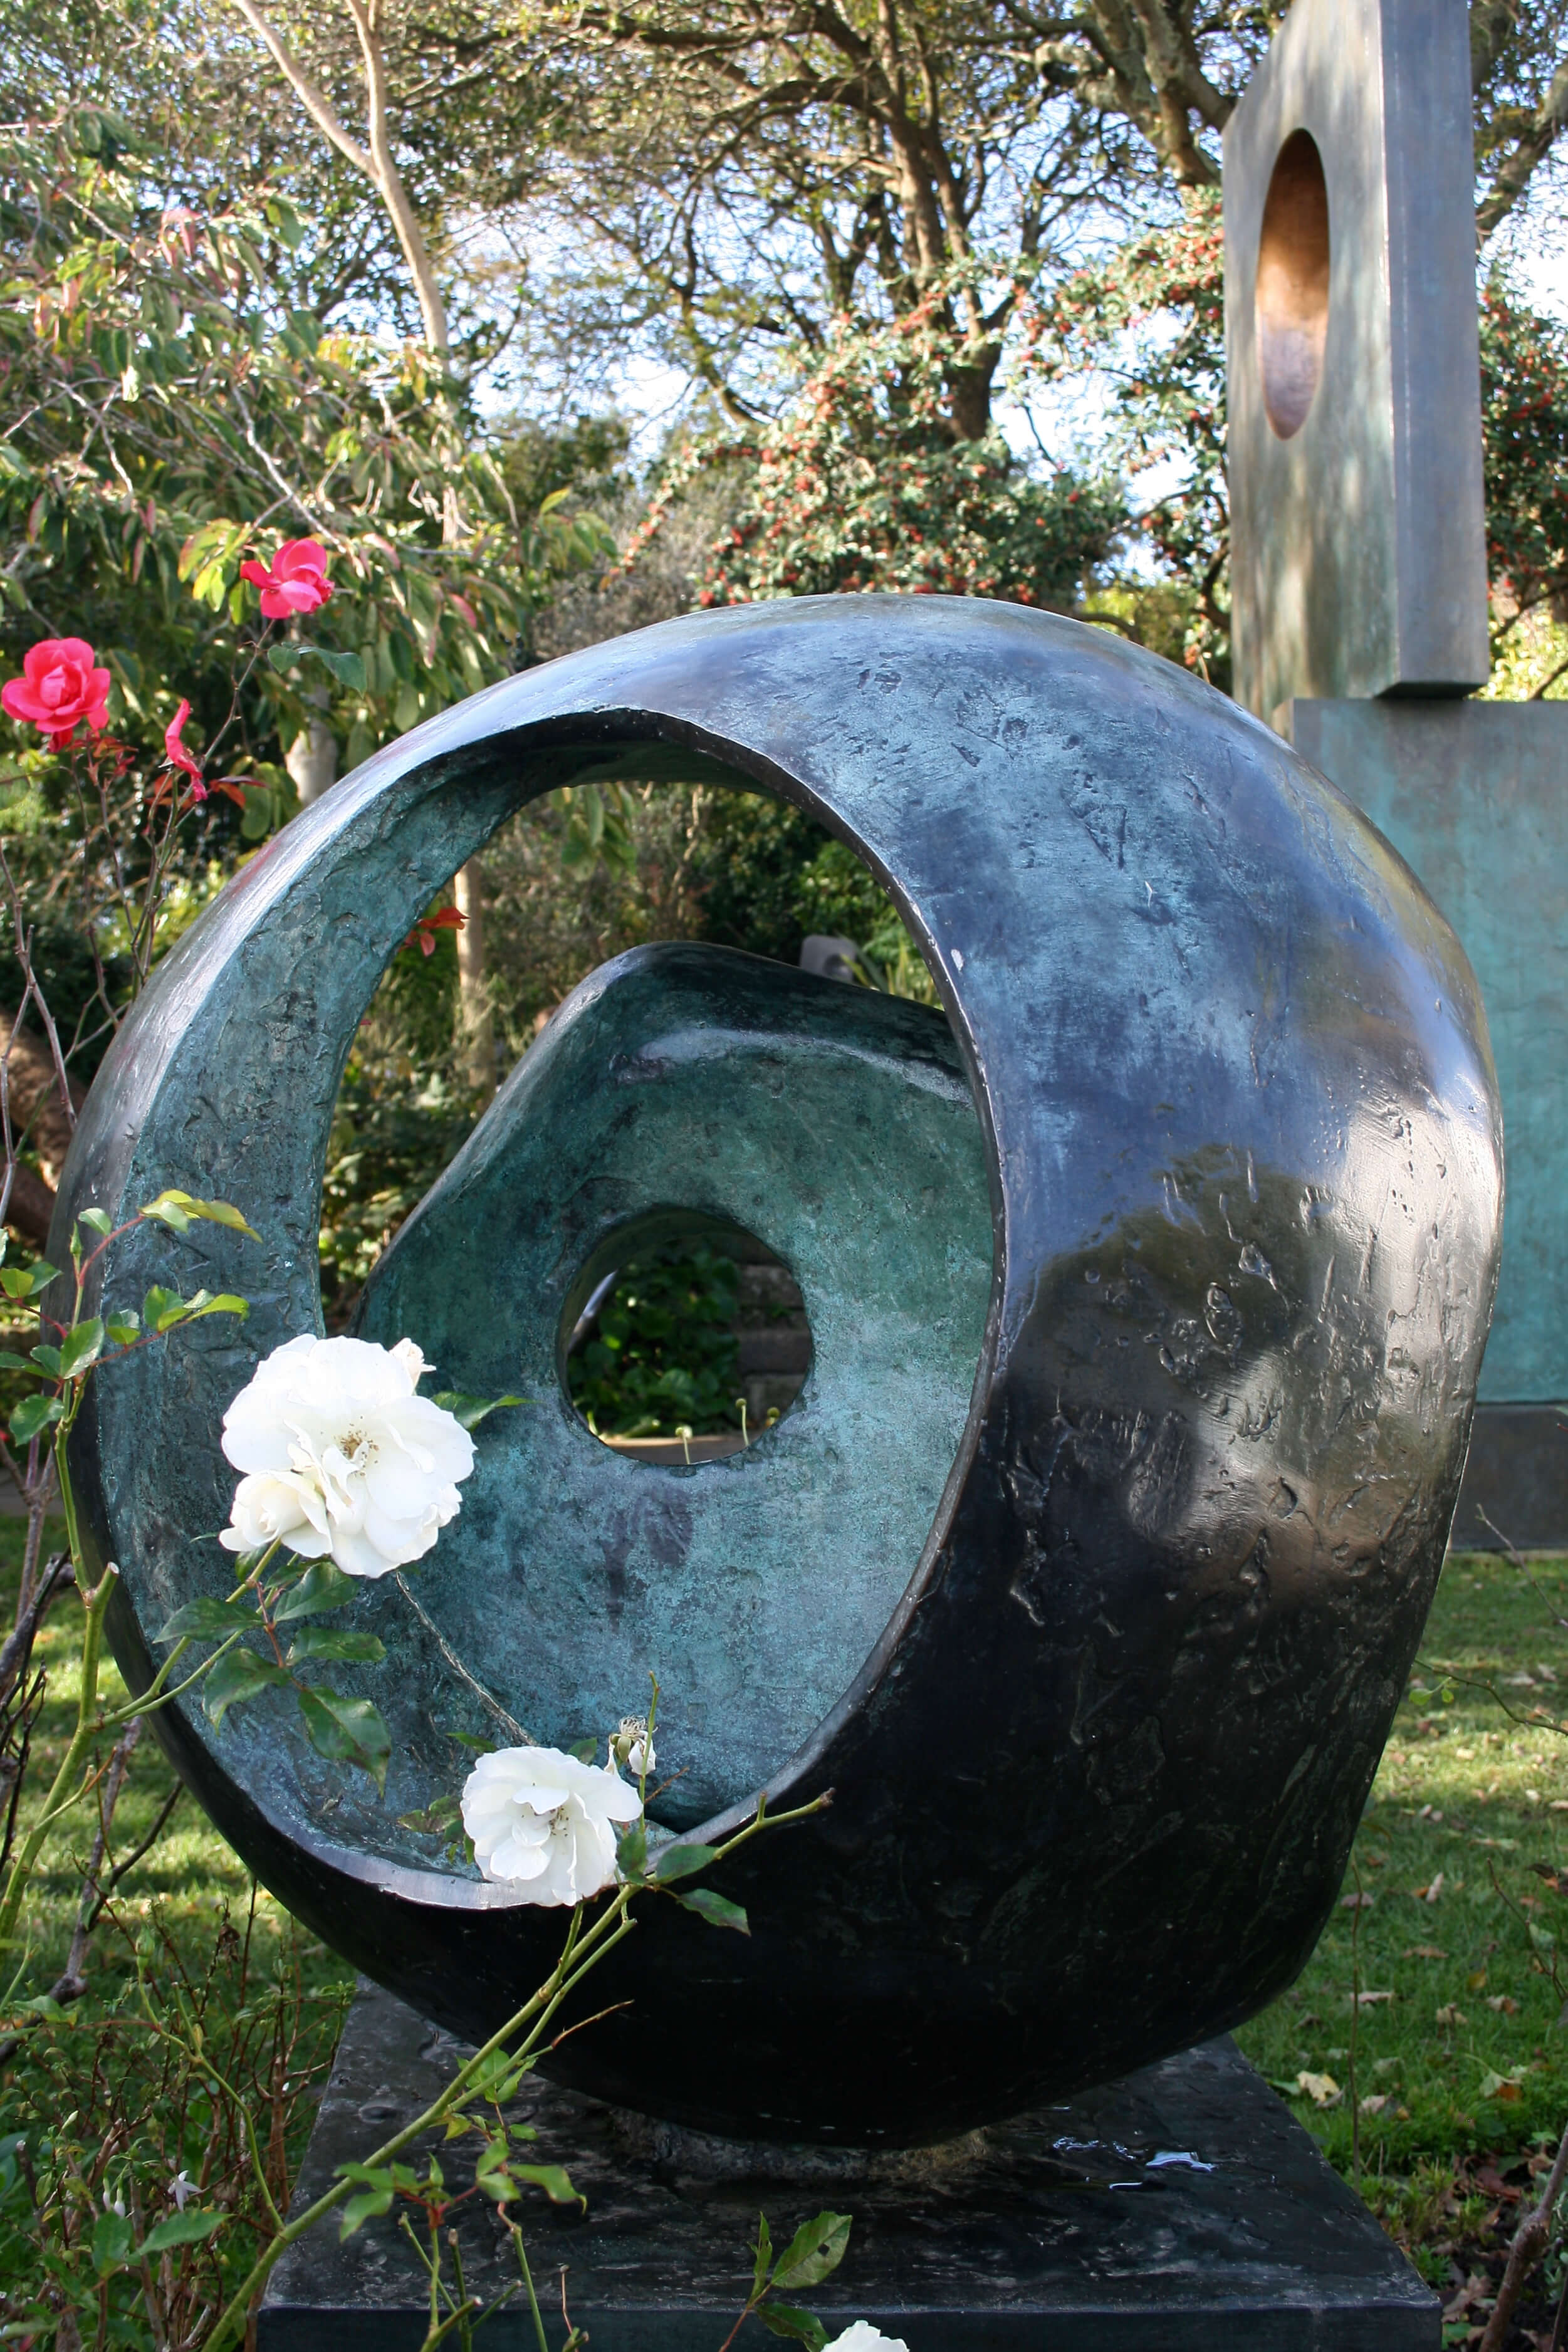 Barbara Hepworth studio garden, sculpture